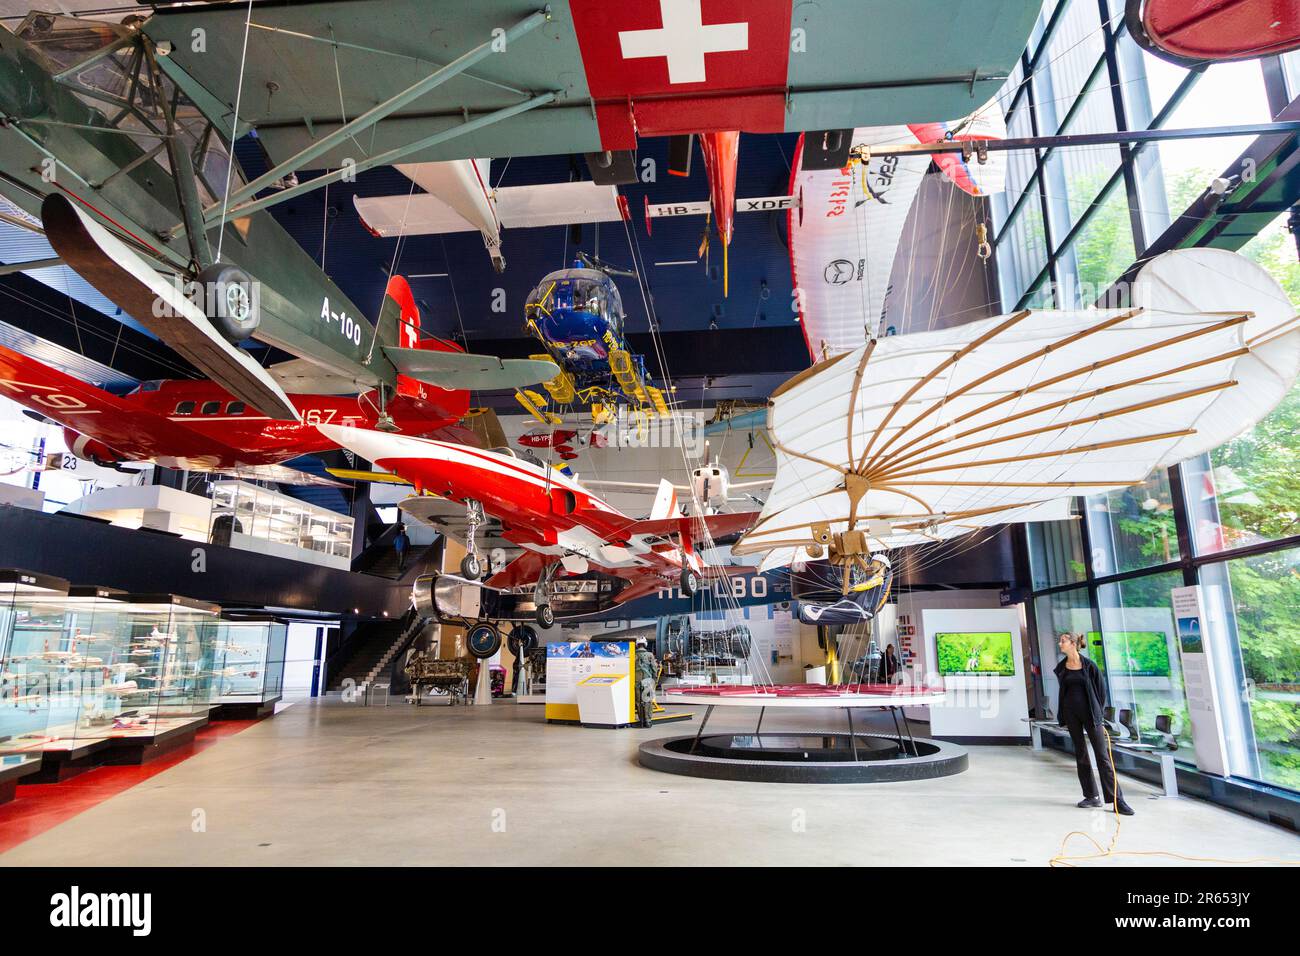 Exposition d'avions et d'hélicoptères au Musée suisse des transports, Lucerne, Suisse Banque D'Images